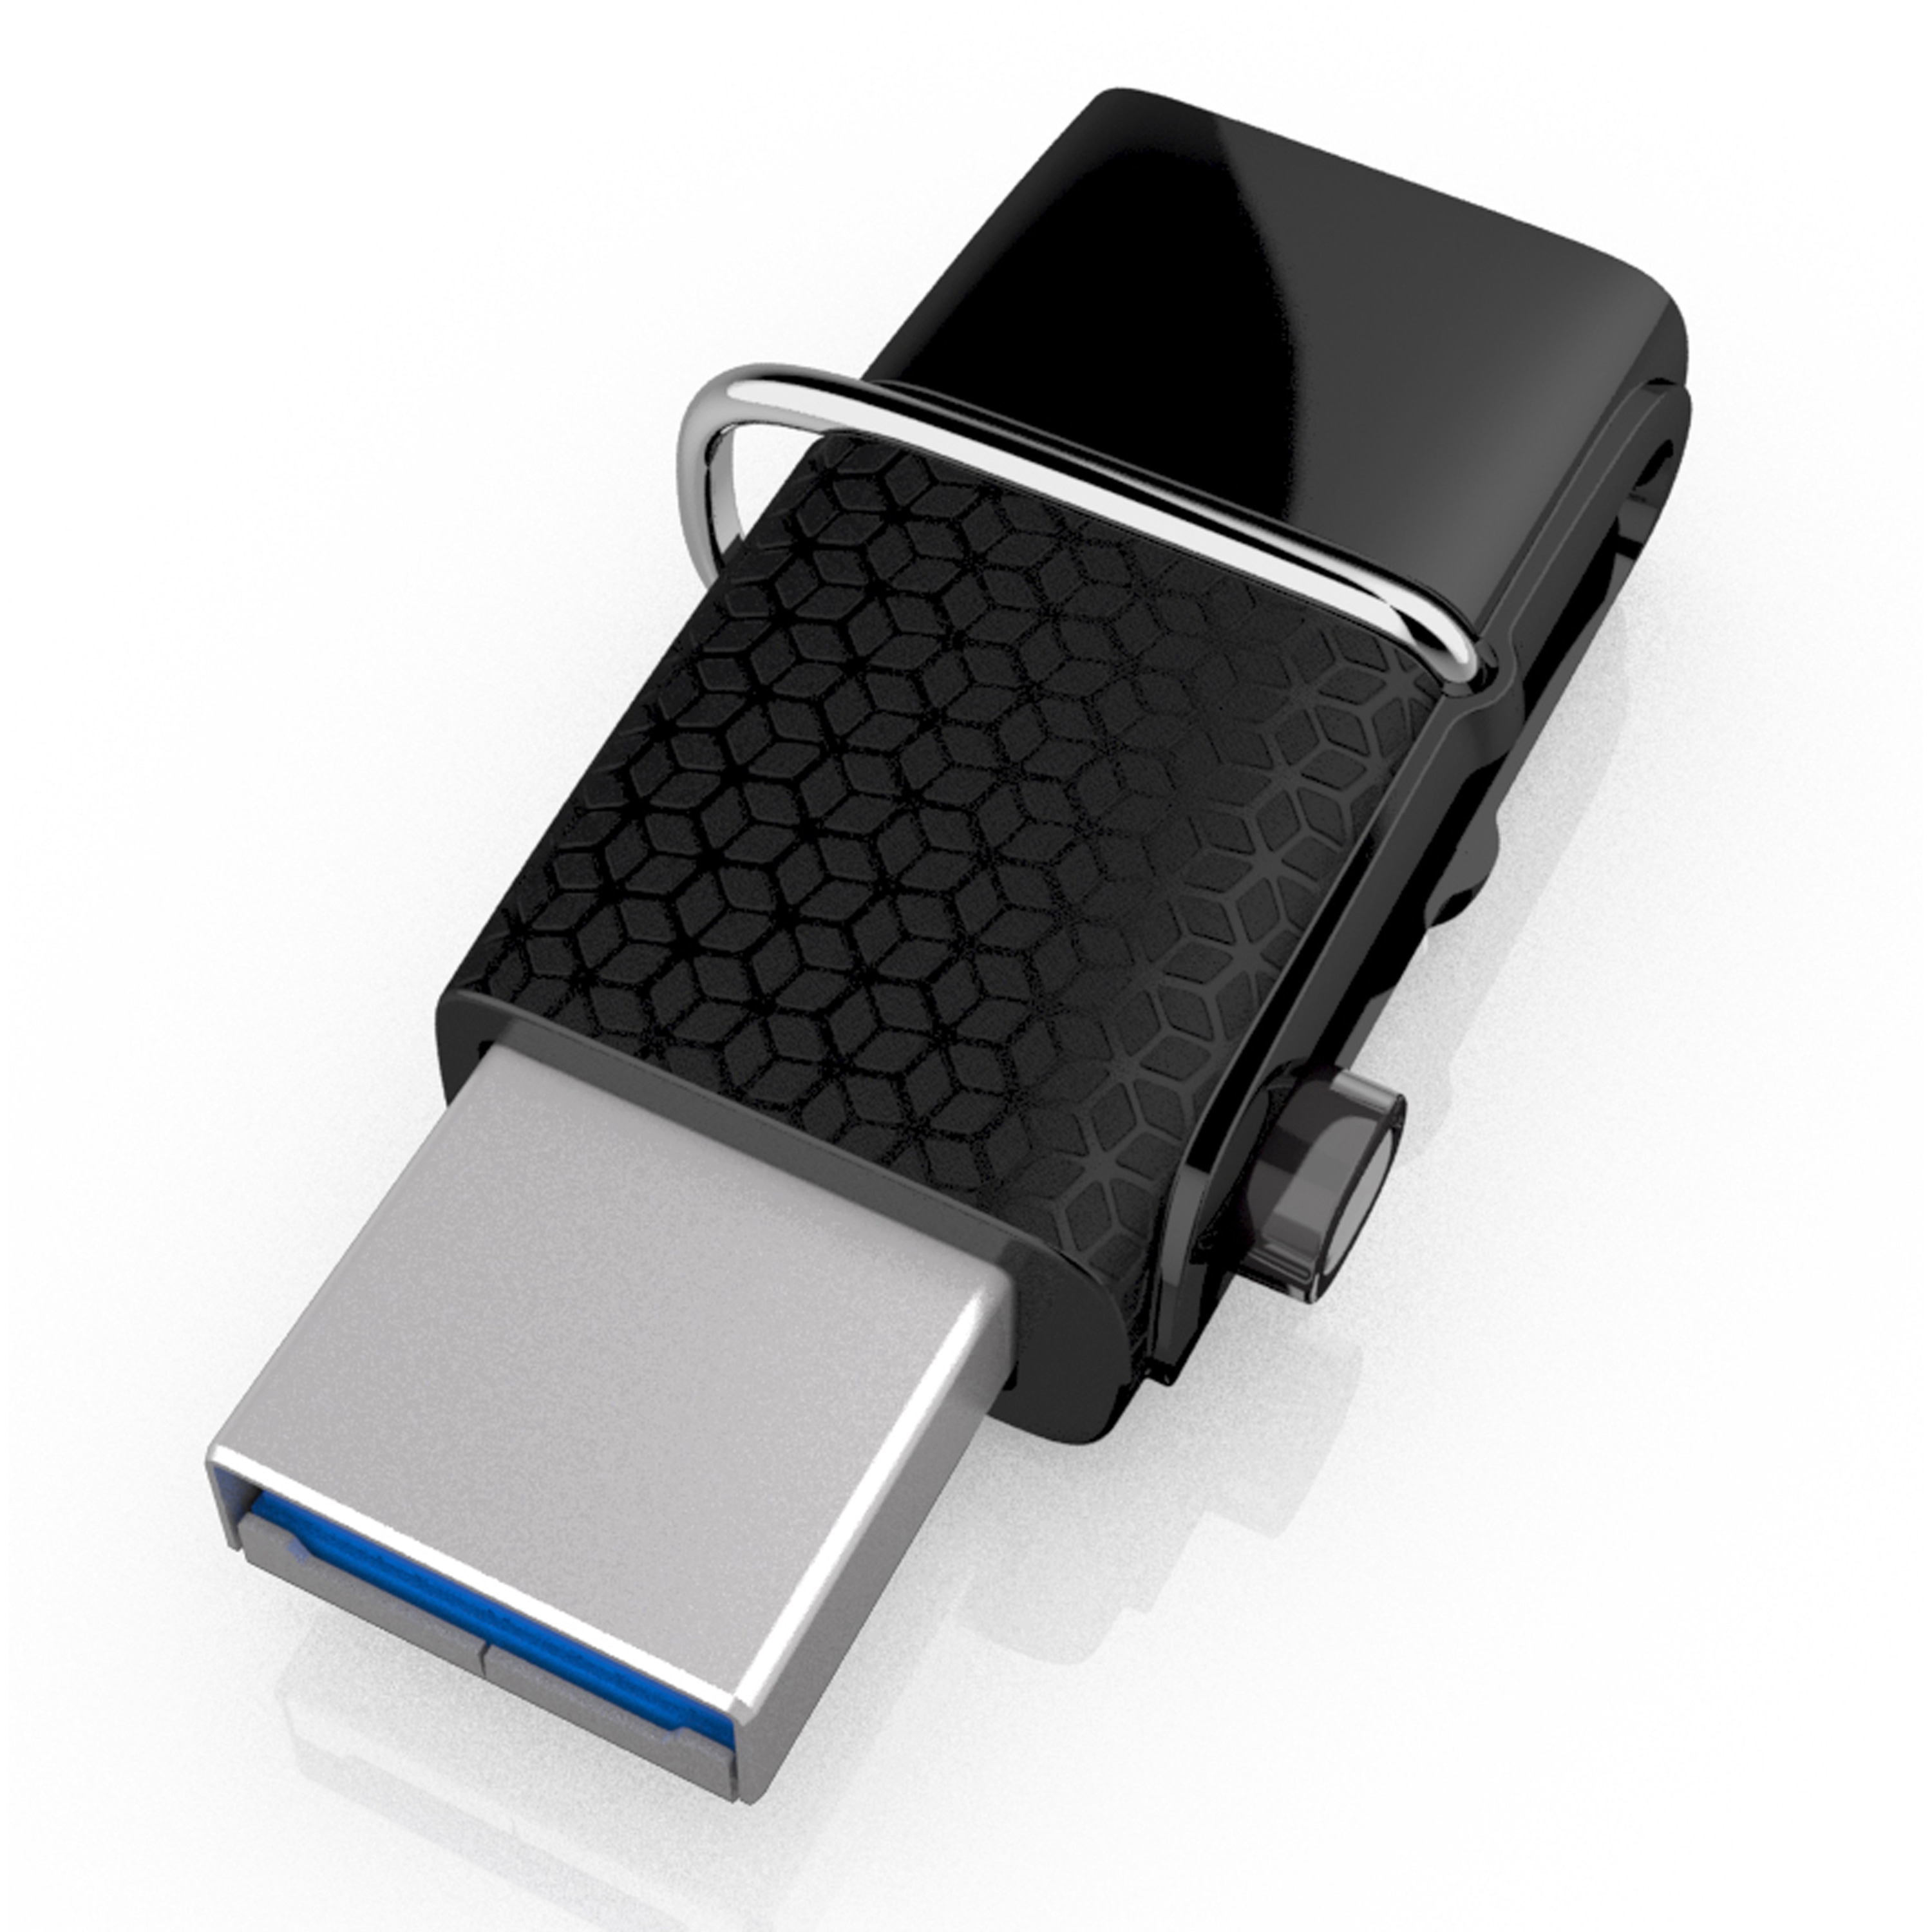 SANDISK Ultra Dual Drive 32 GB, USB 3.0 & microUSB, bis zu 150 MB/s, zur Übertragung von Dateien zwischen Smartphone und PC oder Mac